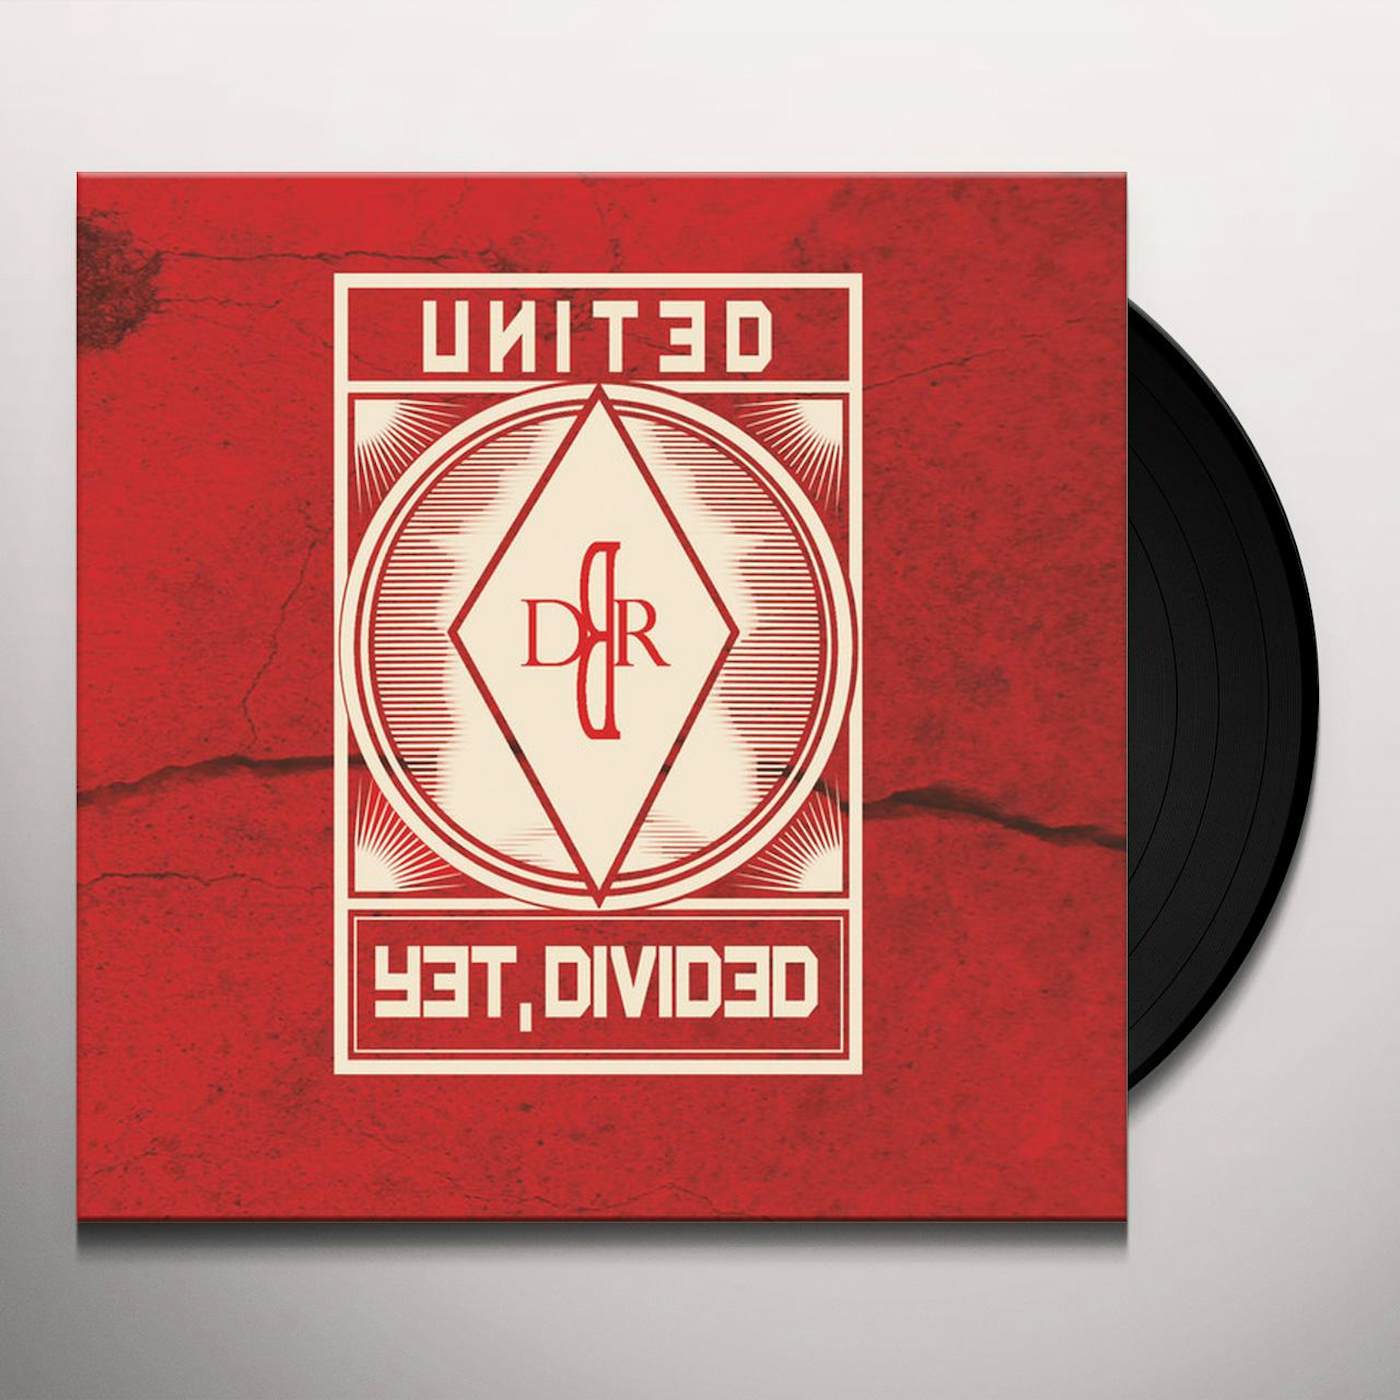 Der Blaue Reiter United yet Divided Vinyl Record